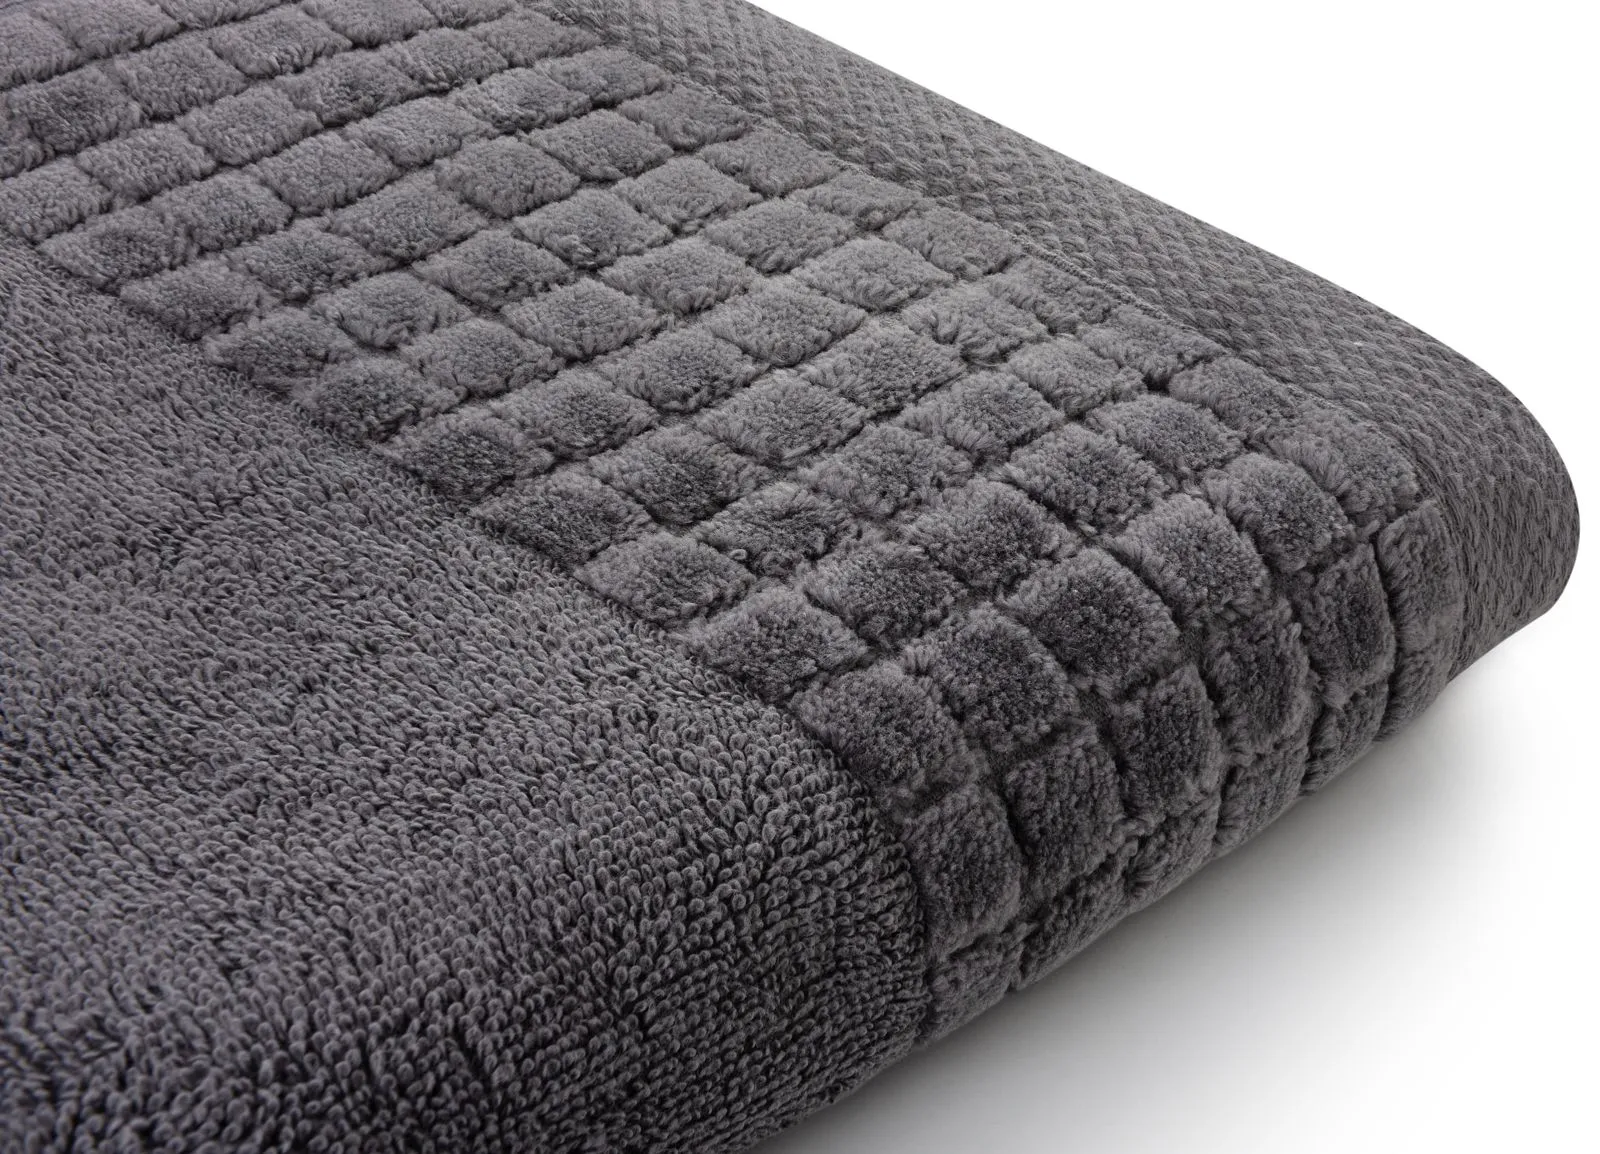 Gruby i miękki ręcznik kąpielowy 140×70 cm Larissa ciemny szary 500 g/m²